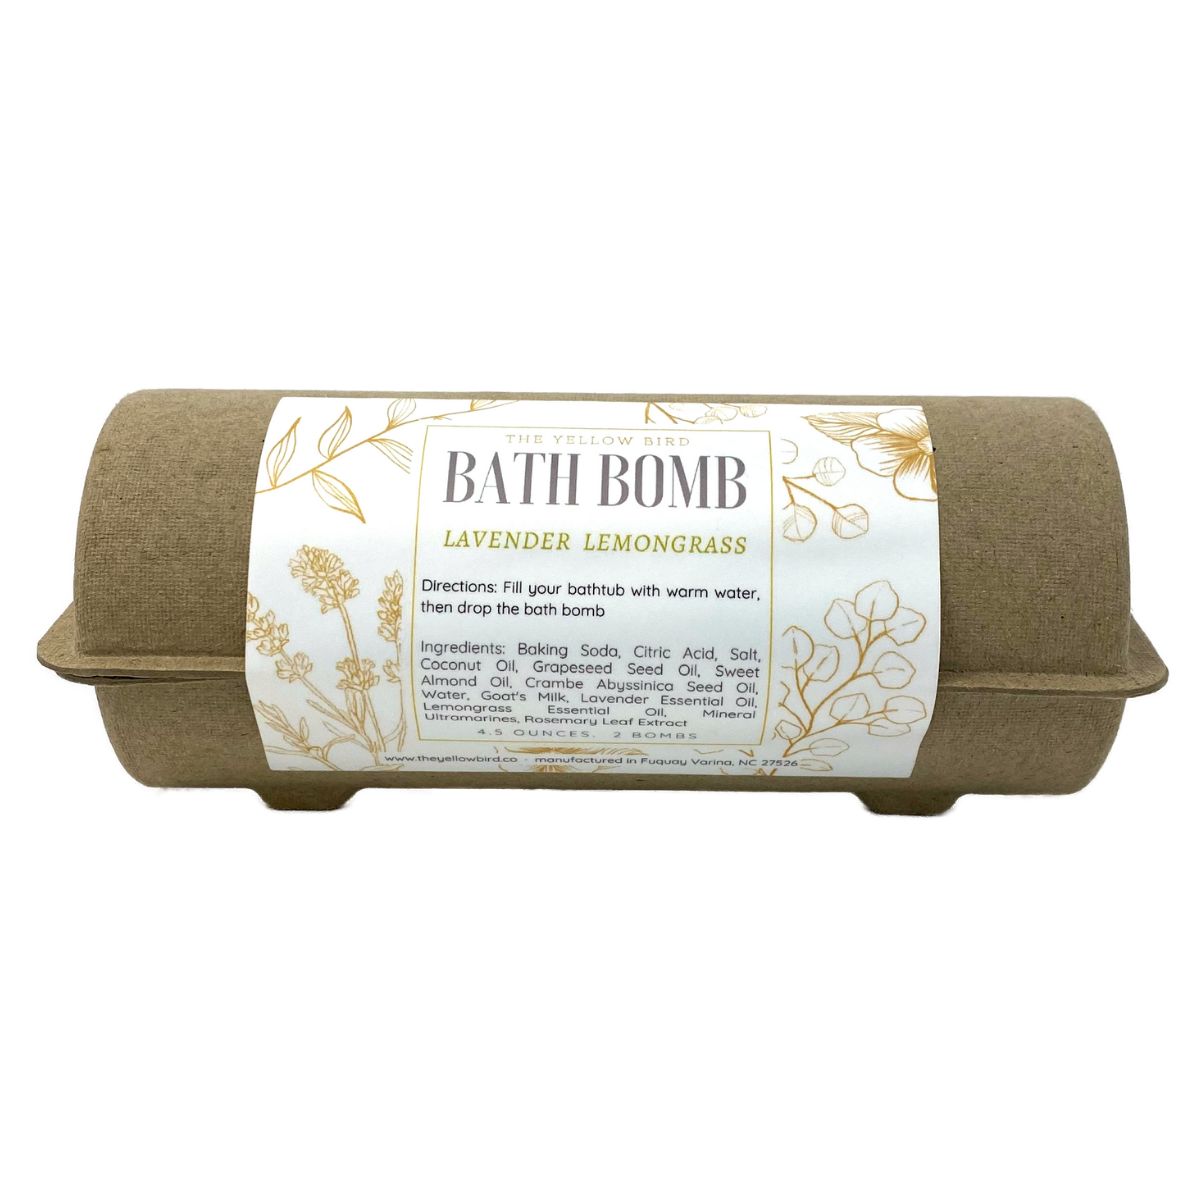 Lavender Lemongrass Bath Bomb - 2 Pack